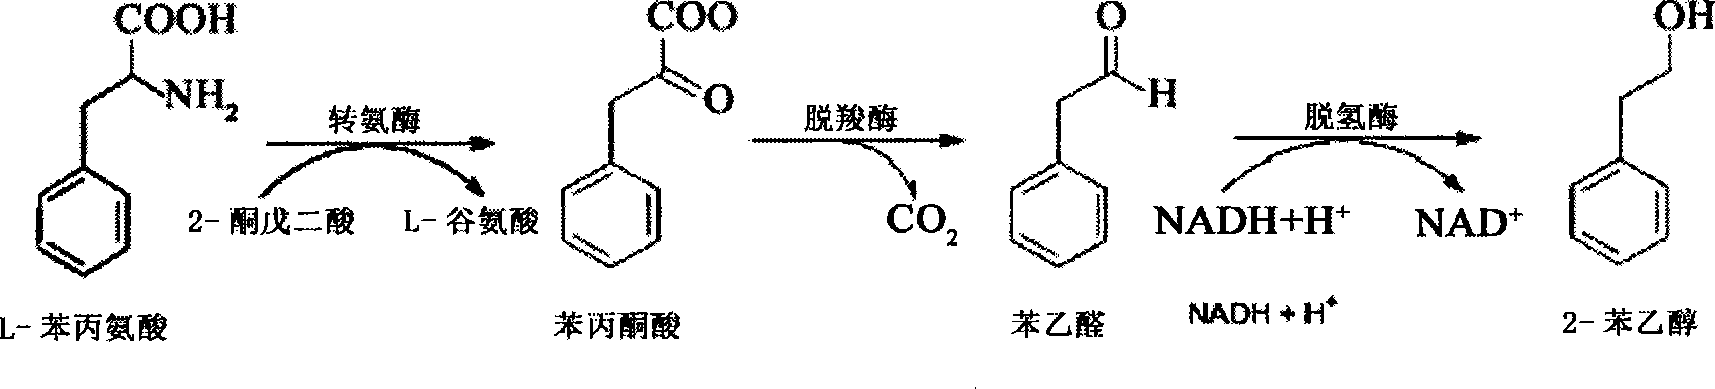 Method for preparing natural 2-benzyl carbinol